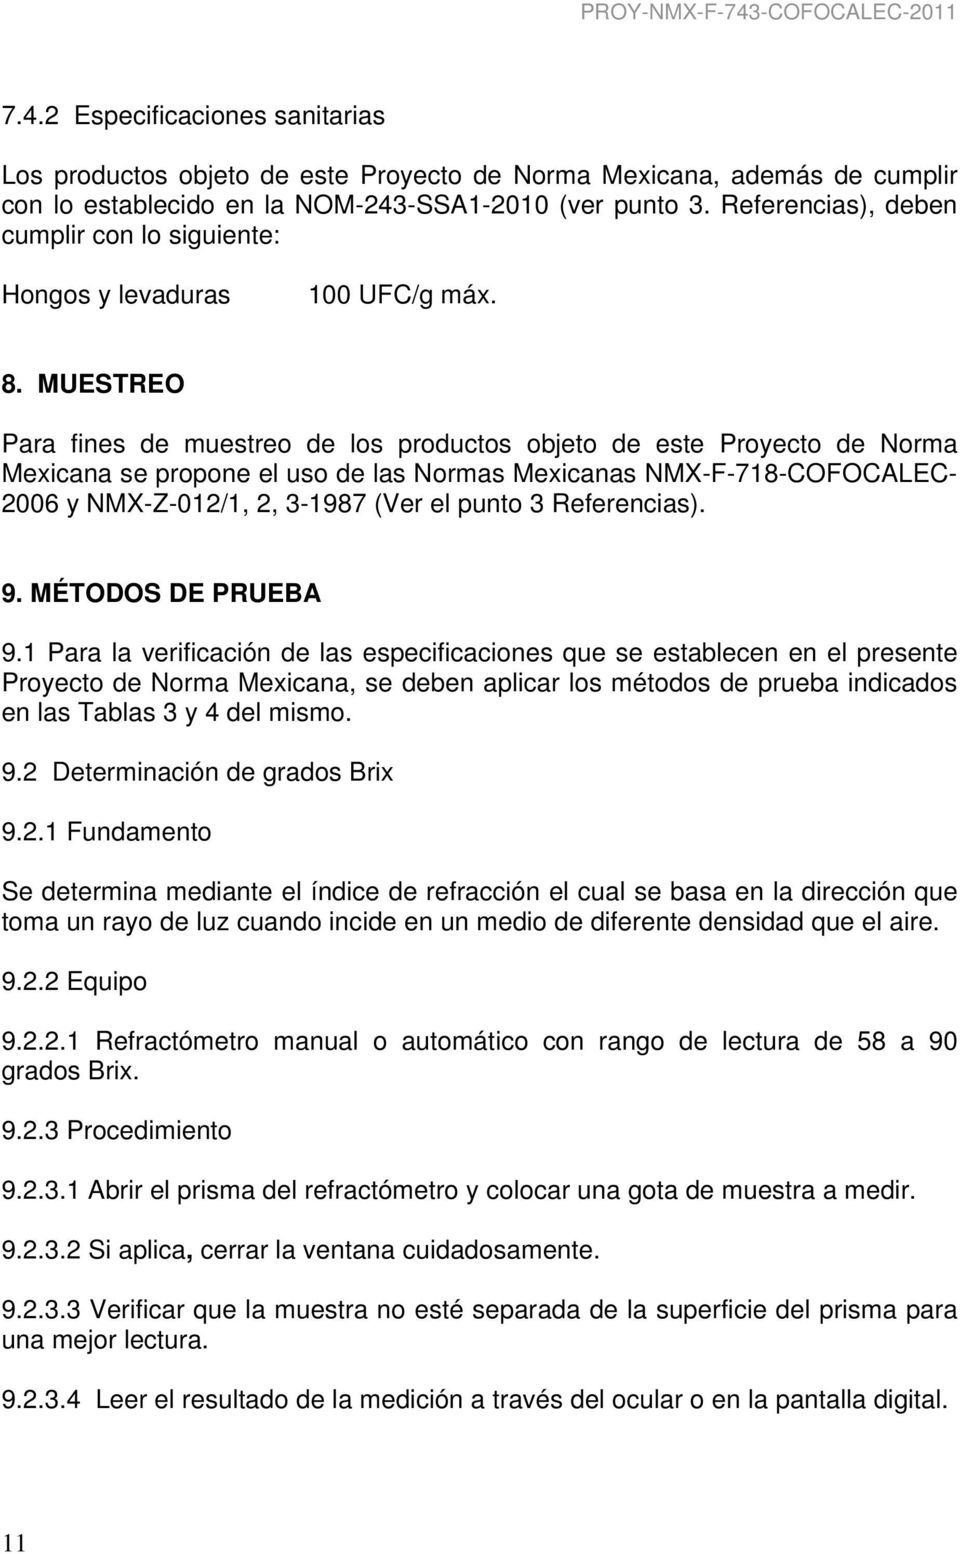 MUESTREO Para fines de muestreo de los productos objeto de este Proyecto de Norma Mexicana se propone el uso de las Normas Mexicanas NMX-F-718-COFOCALEC- 2006 y NMX-Z-012/1, 2, 3-1987 (Ver el punto 3